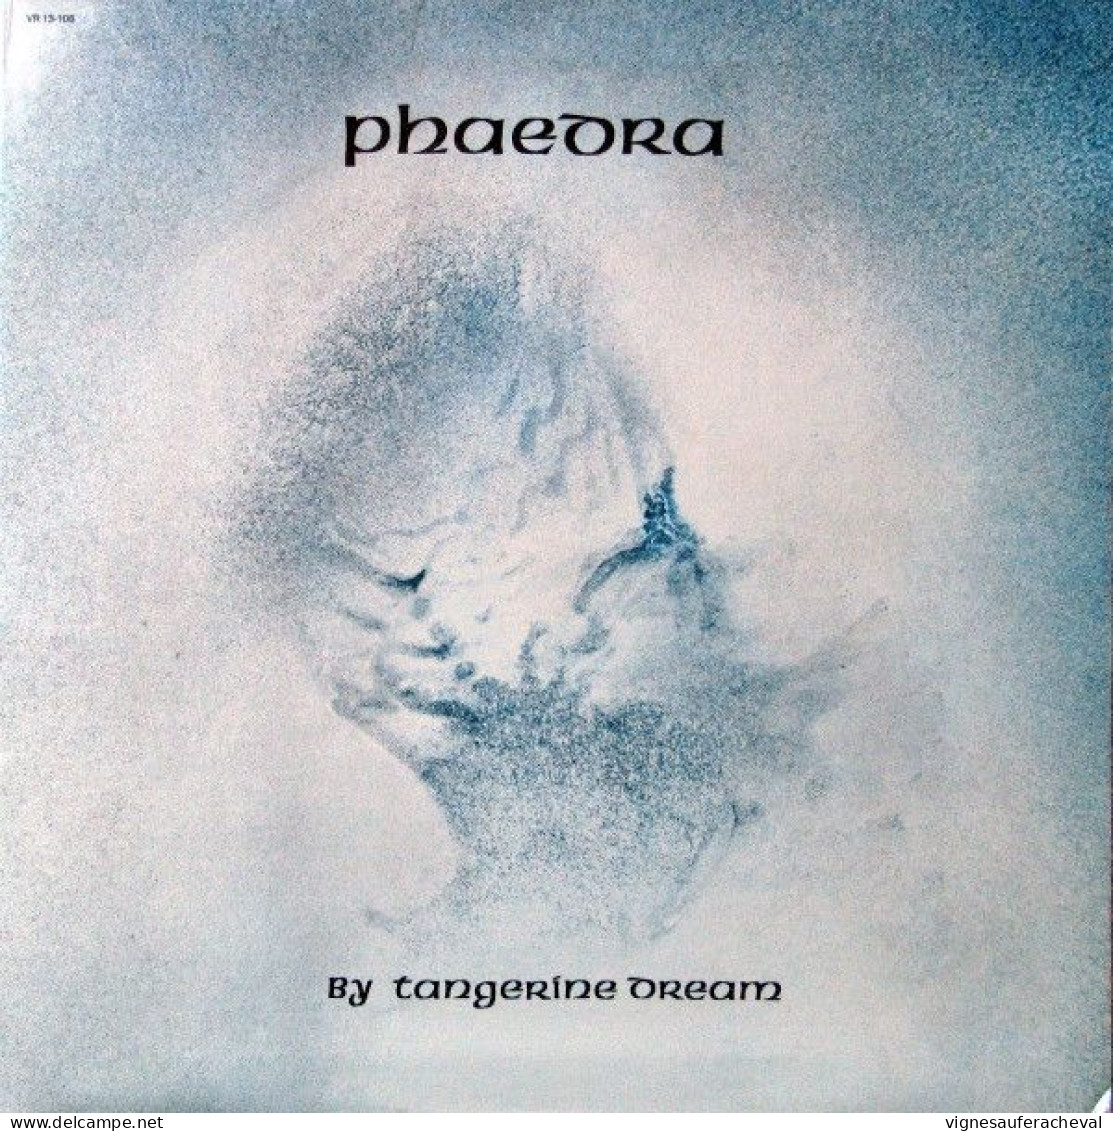 Tangerine Dream - Phaedra - Other - English Music